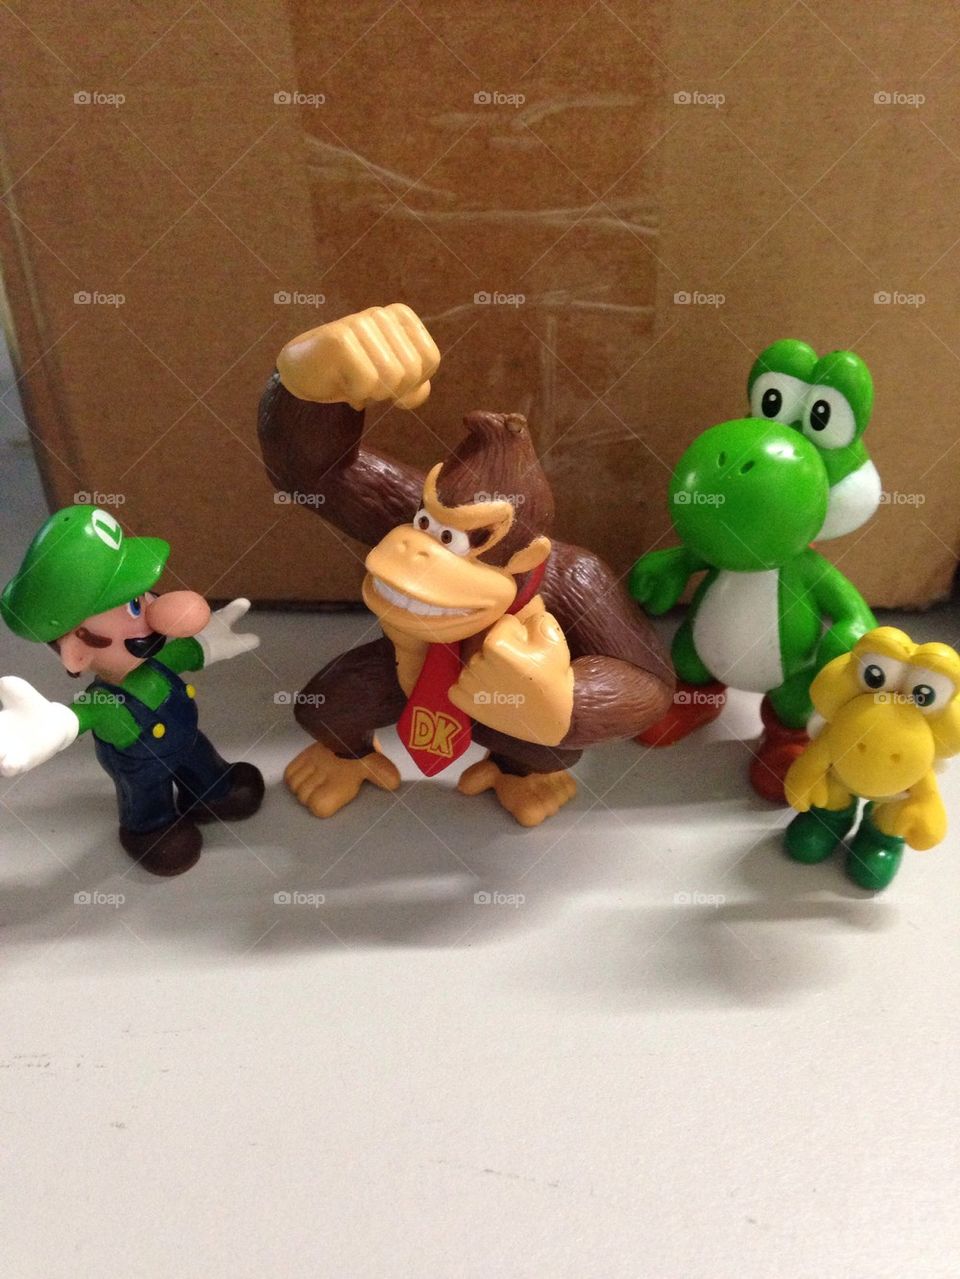 Mario crew